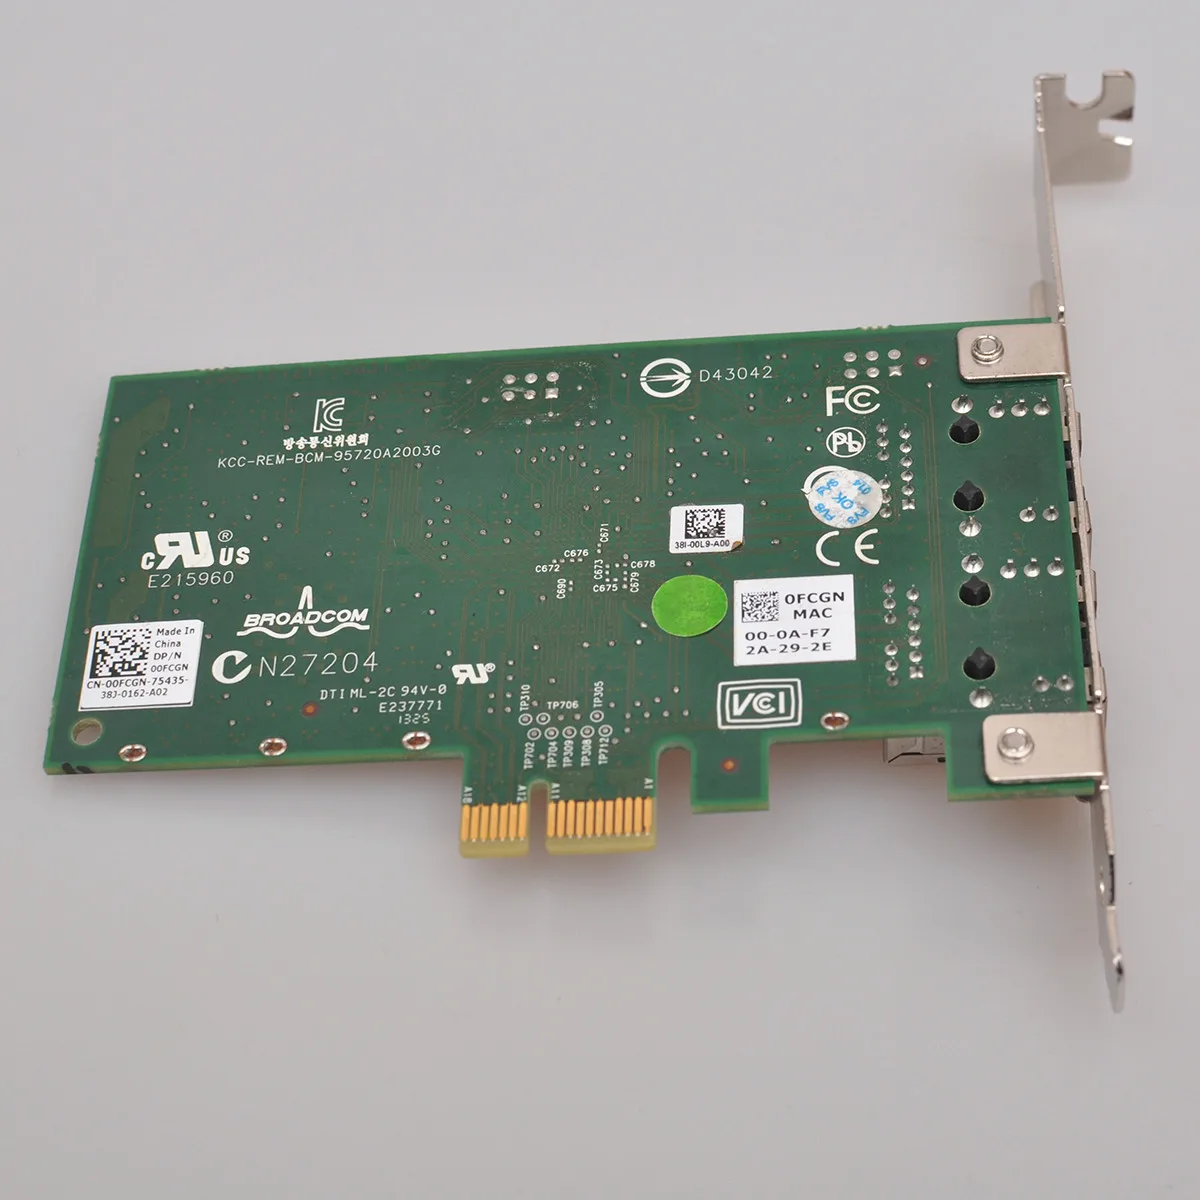 מקורי Broadcom 5720 BCM5720 557M9 כפול 2 יציאת רשת Gigabit באינטרנט כרטיס PCI-E X1 עבור Dell גרסה 00FCGN 0FCGN - 5